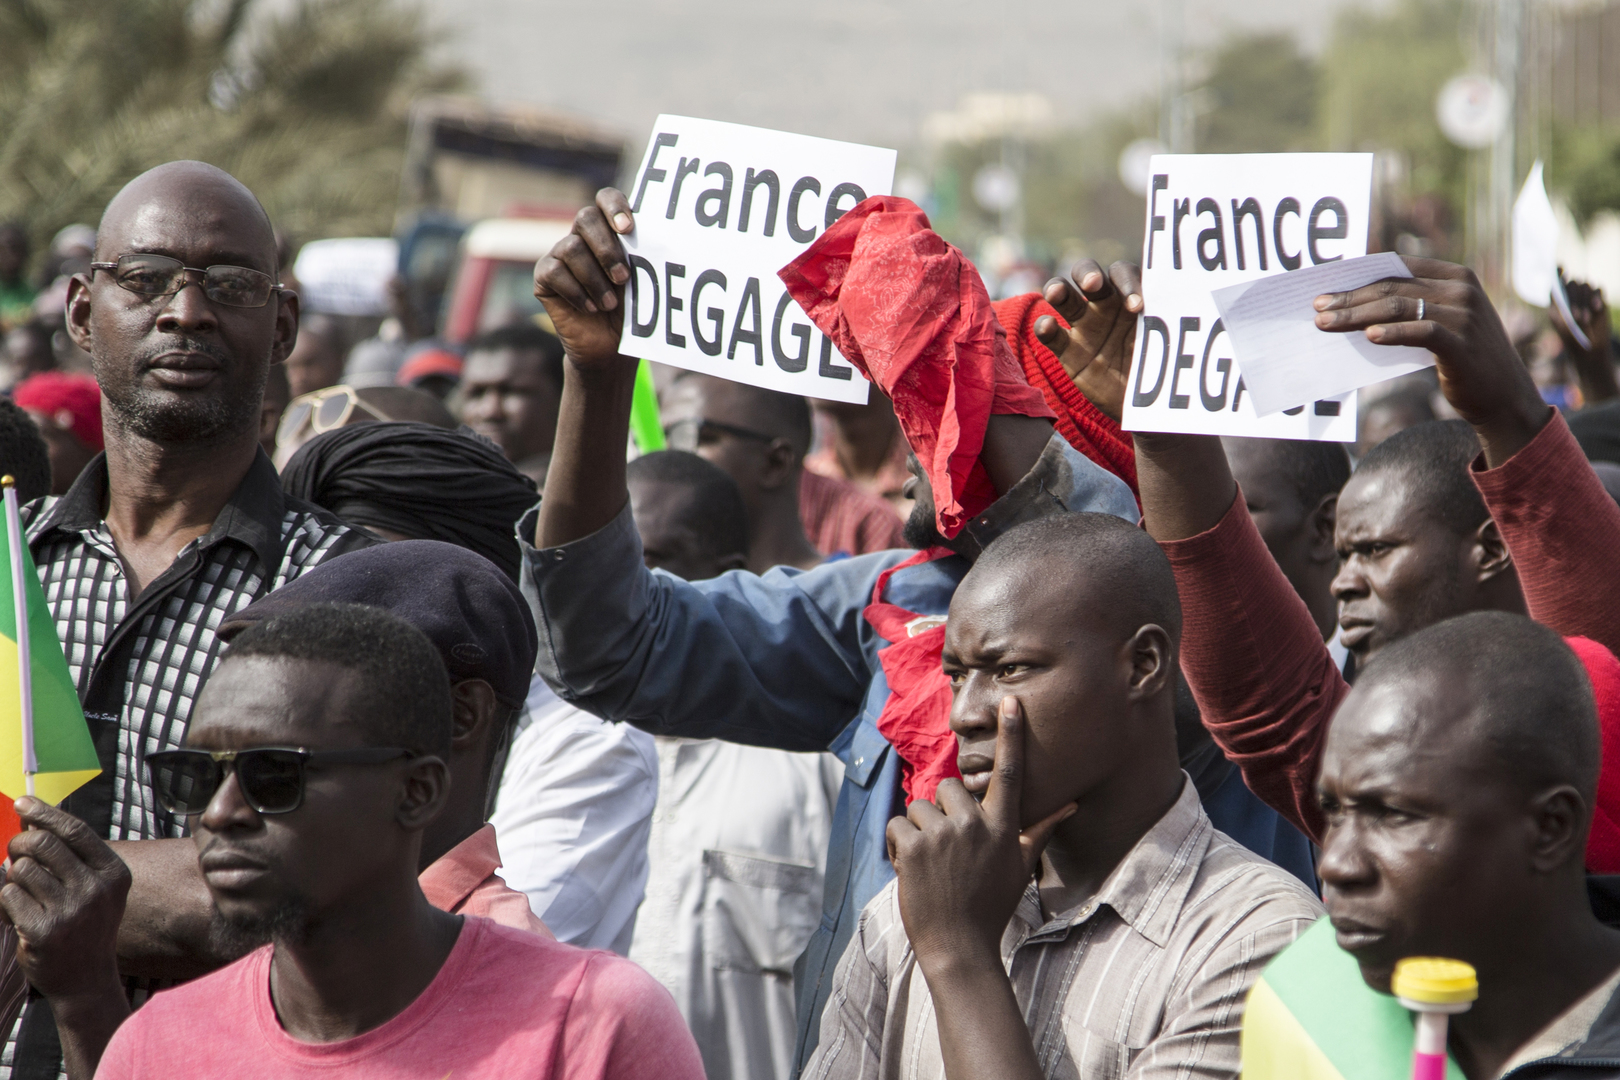 “France dégage !” : Le Parti National Breton se félicite de l’expulsion de l’ambassadeur de France au Mali